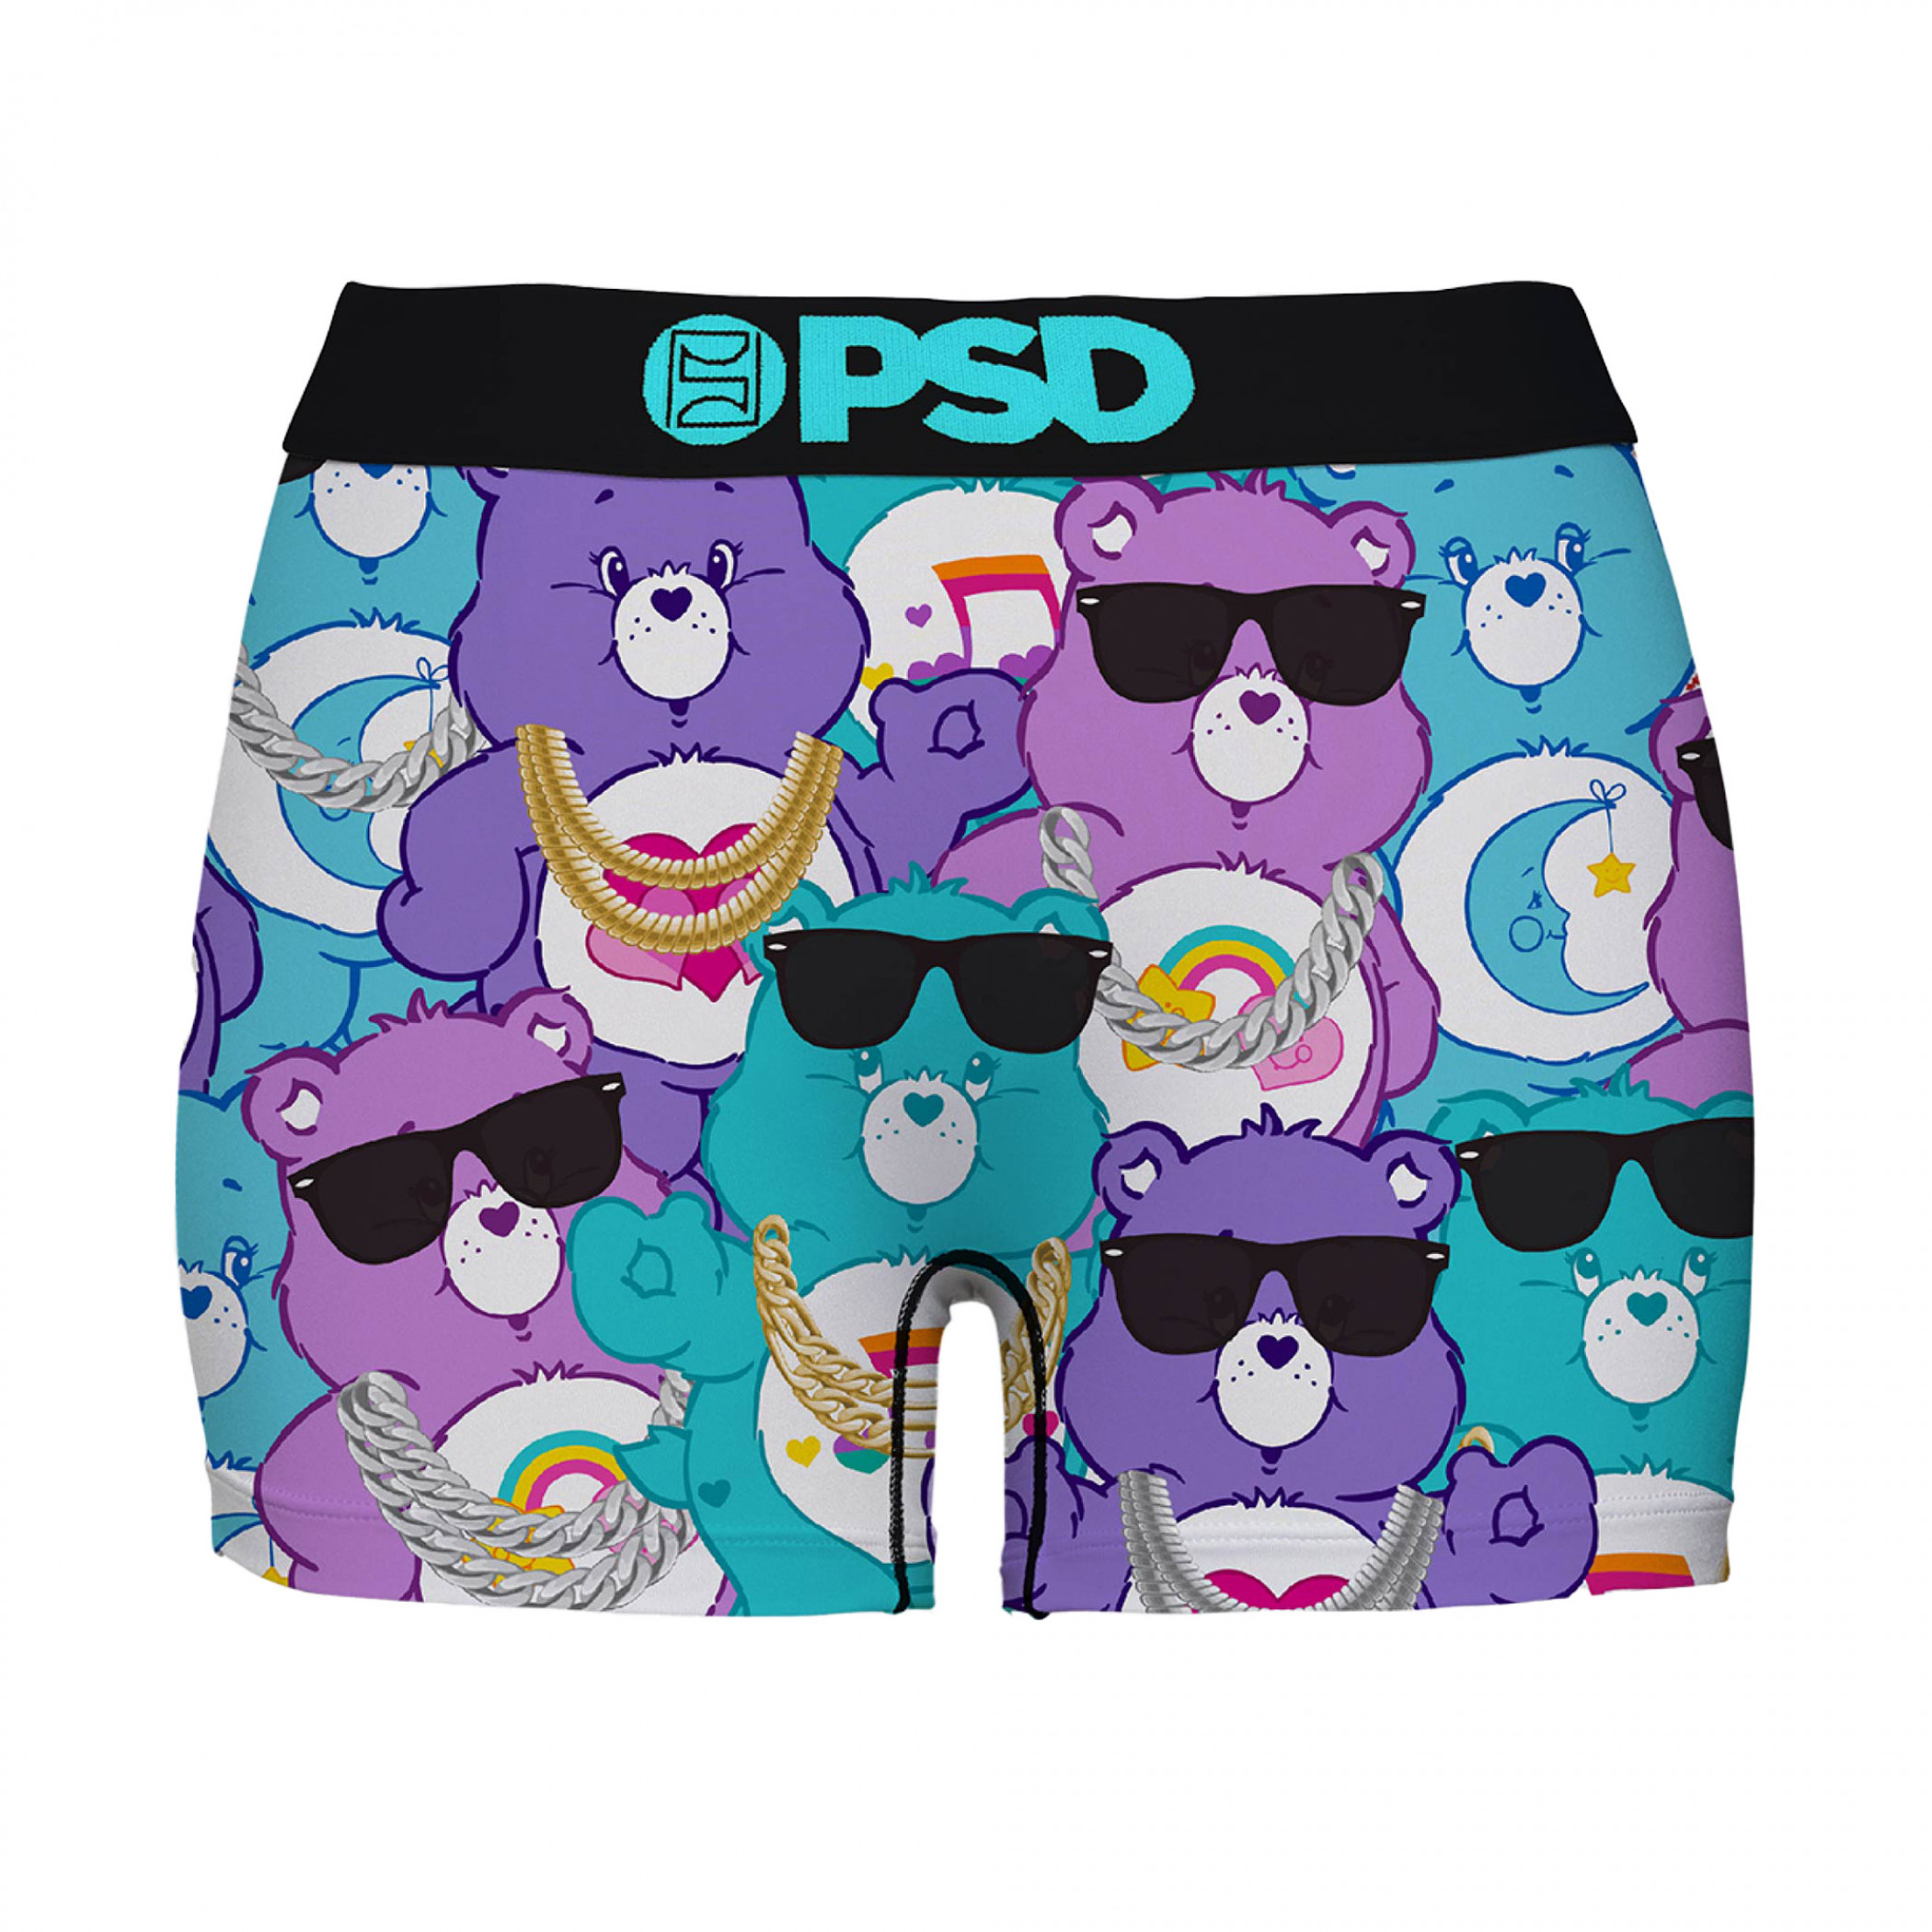 Rainbow Boy Short - PSD Underwear